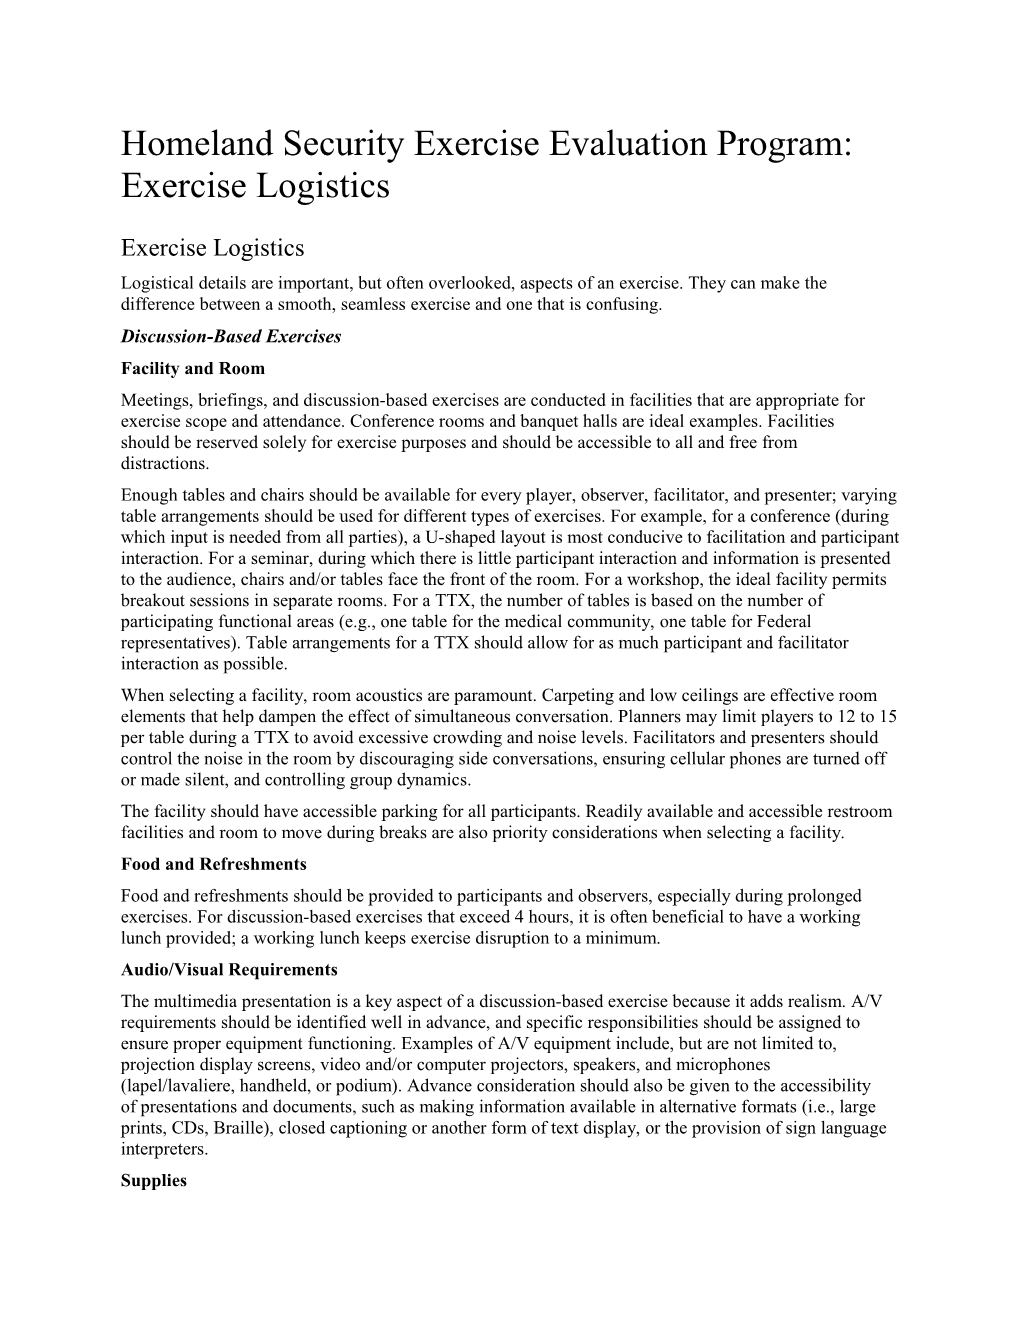 Homeland Security Exercise Evaluation Program: Exercise Logistics